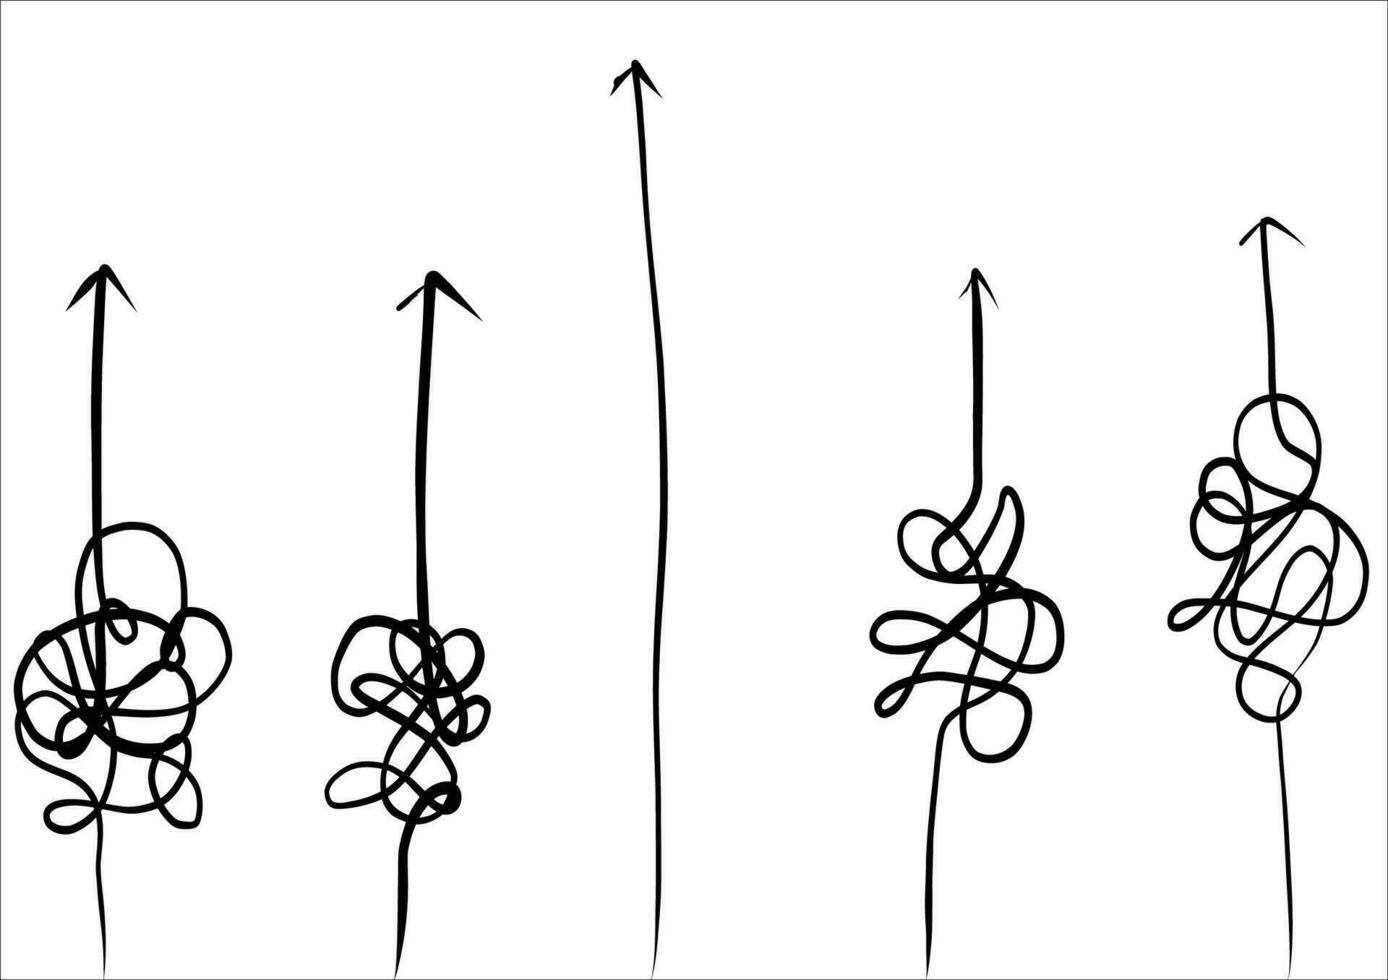 resumen y fácil sencillo línea desde comienzo a final vector ilustración conjunto.continuo uno línea dibujo.